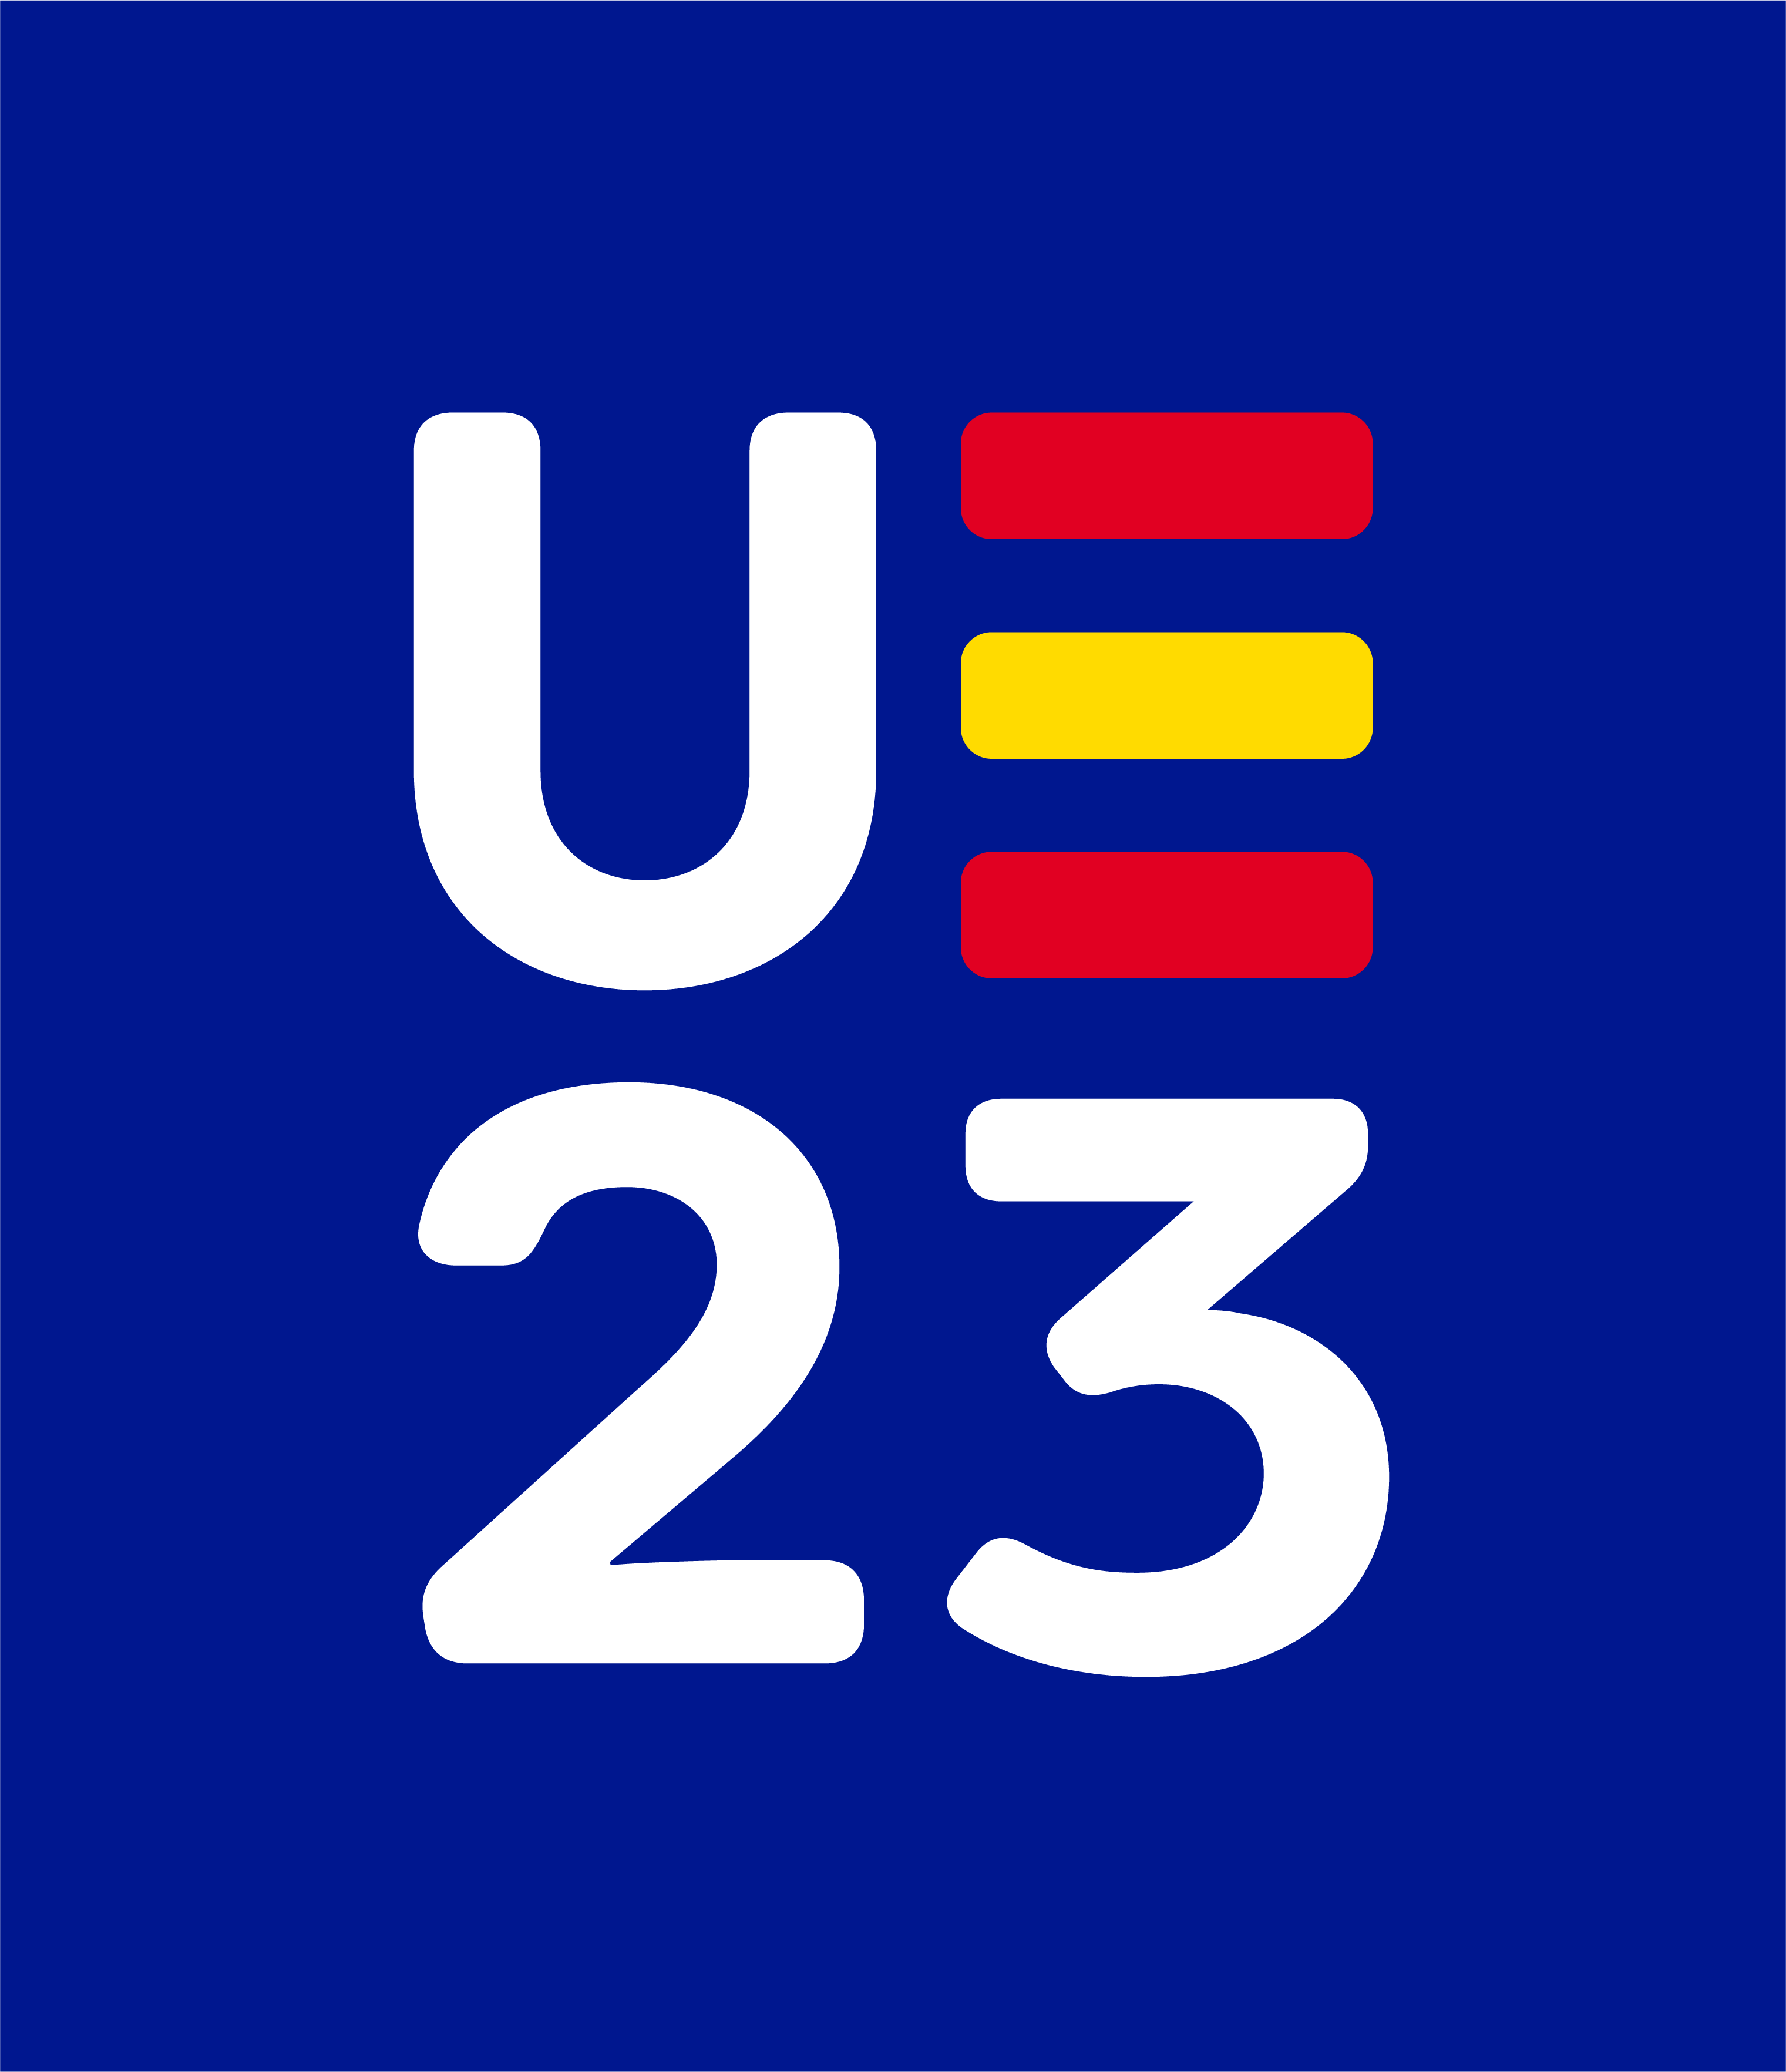 Presidencia Espa�ola del Consejo de la Uni�n Europea 2023